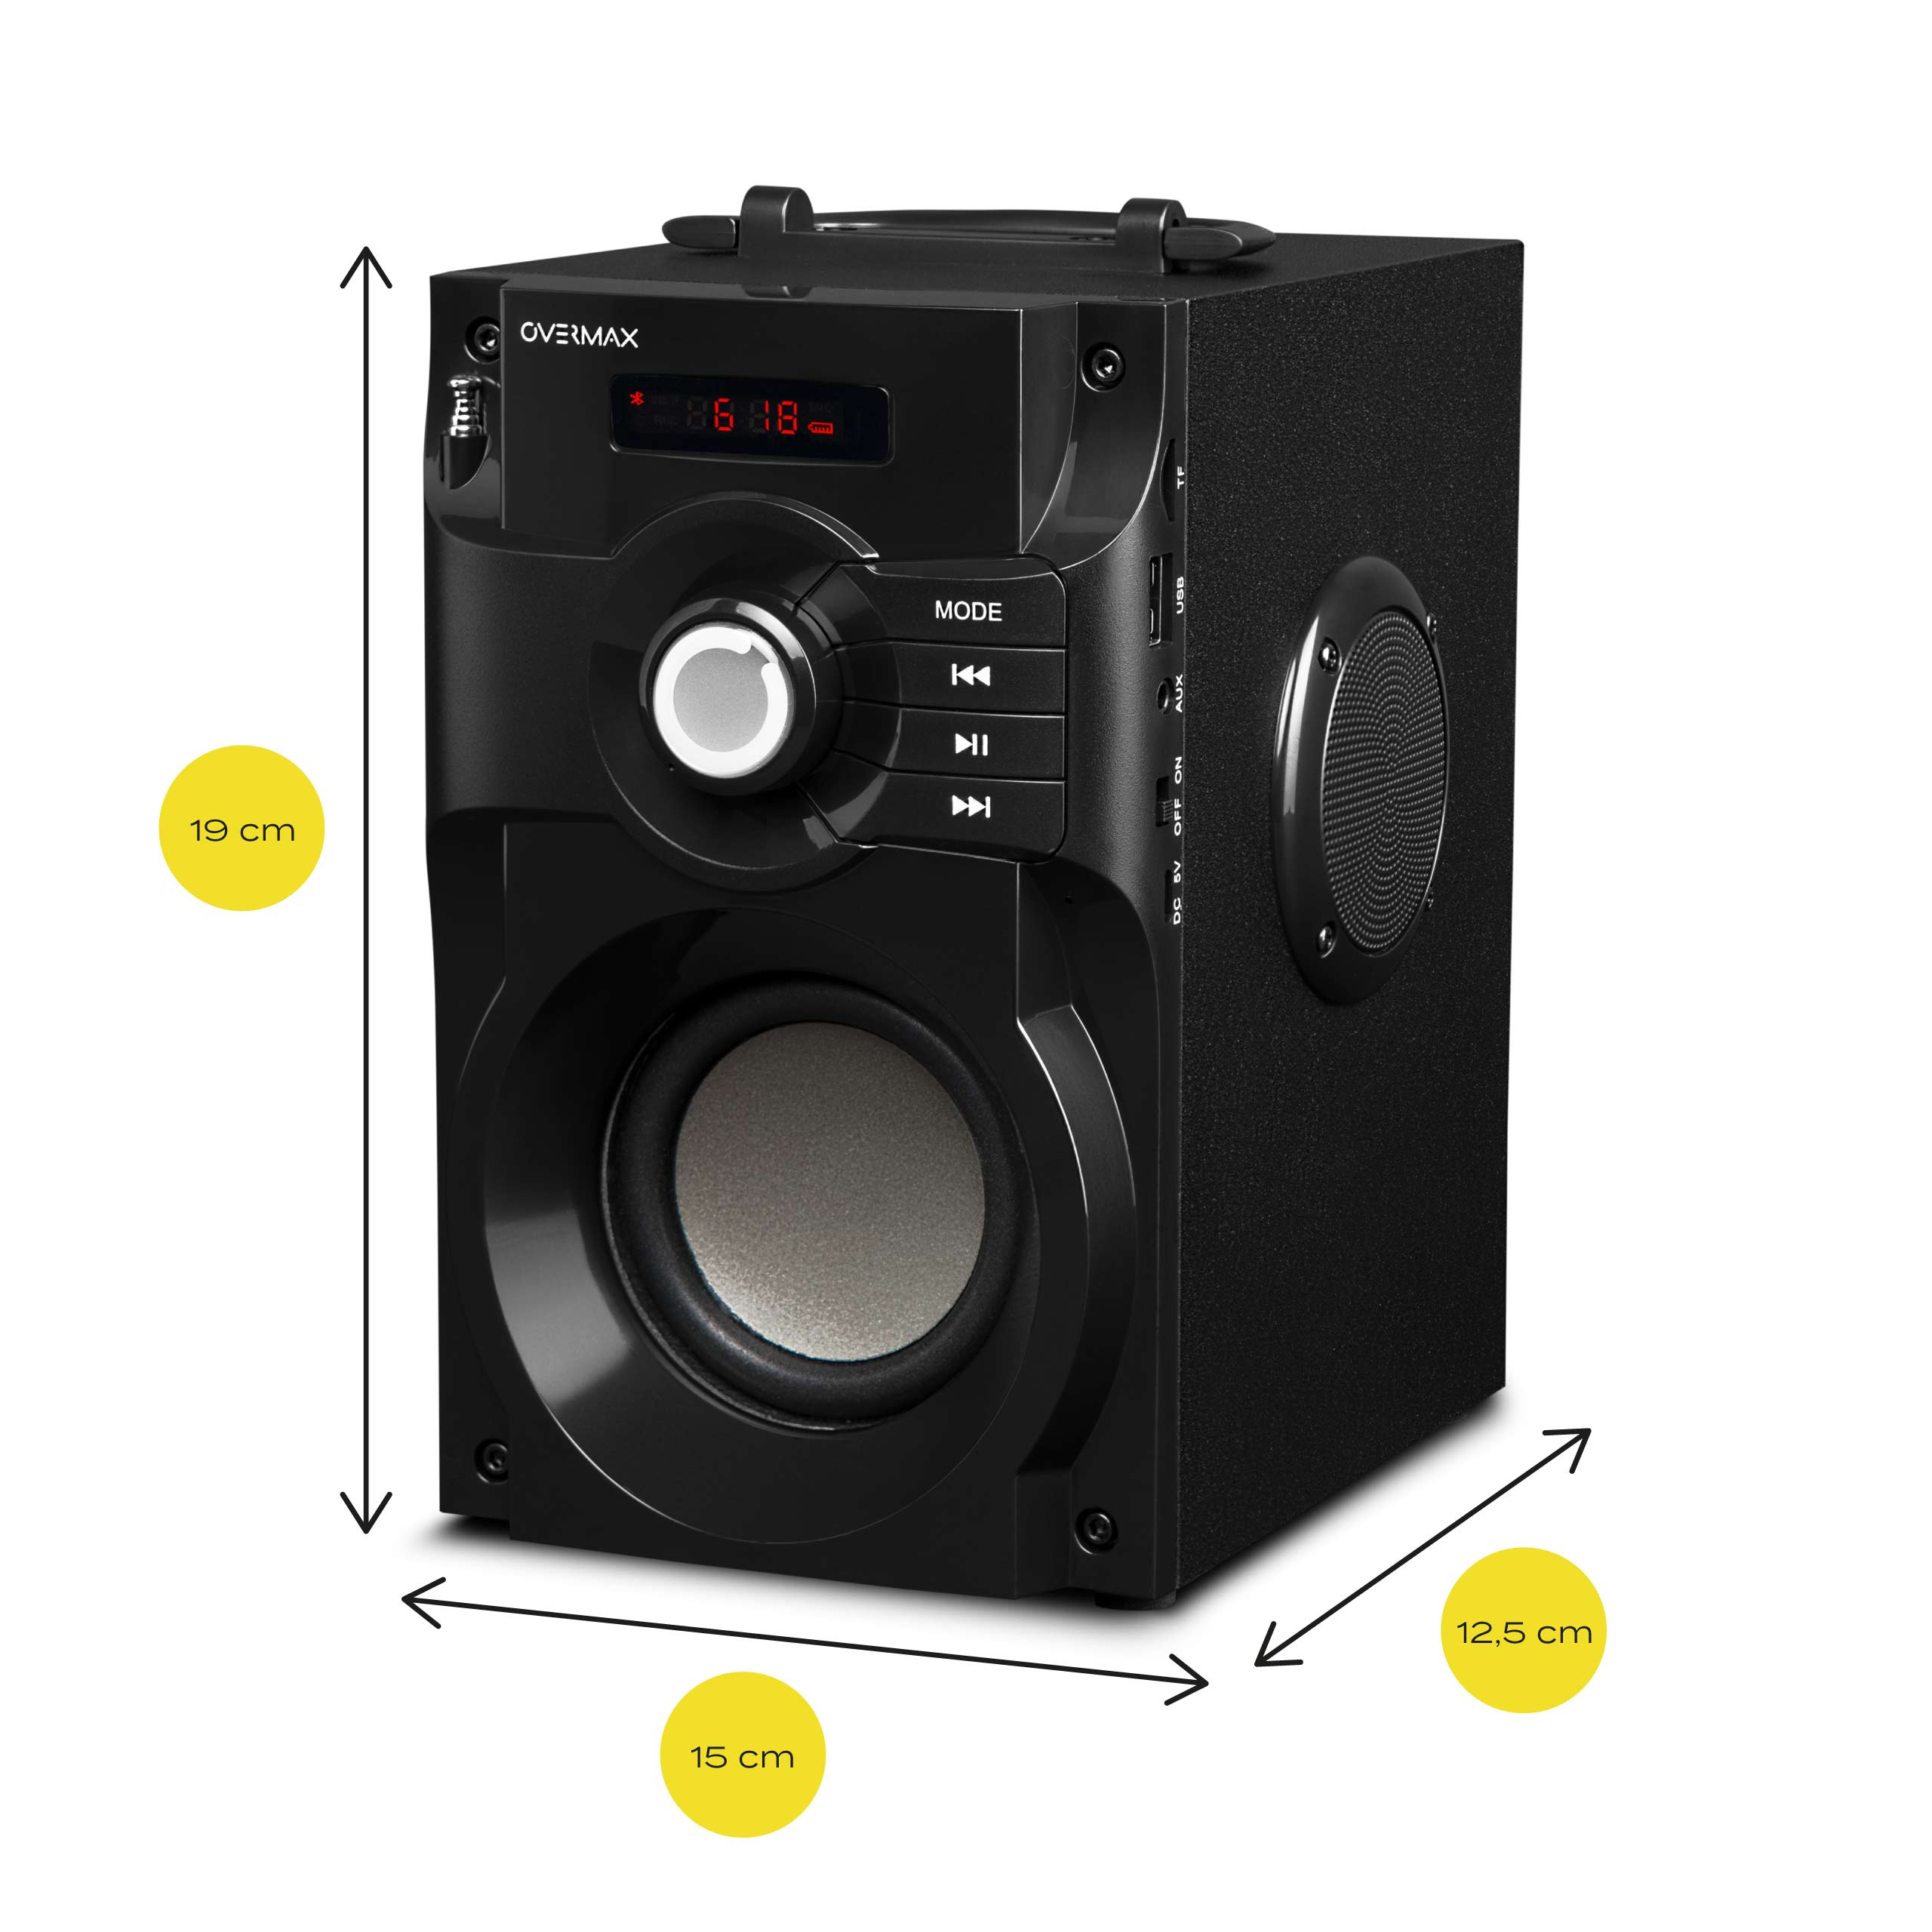 OVERMAX SOUNBEAT Bluetooth 2.0 Schwarz Lautsprecher